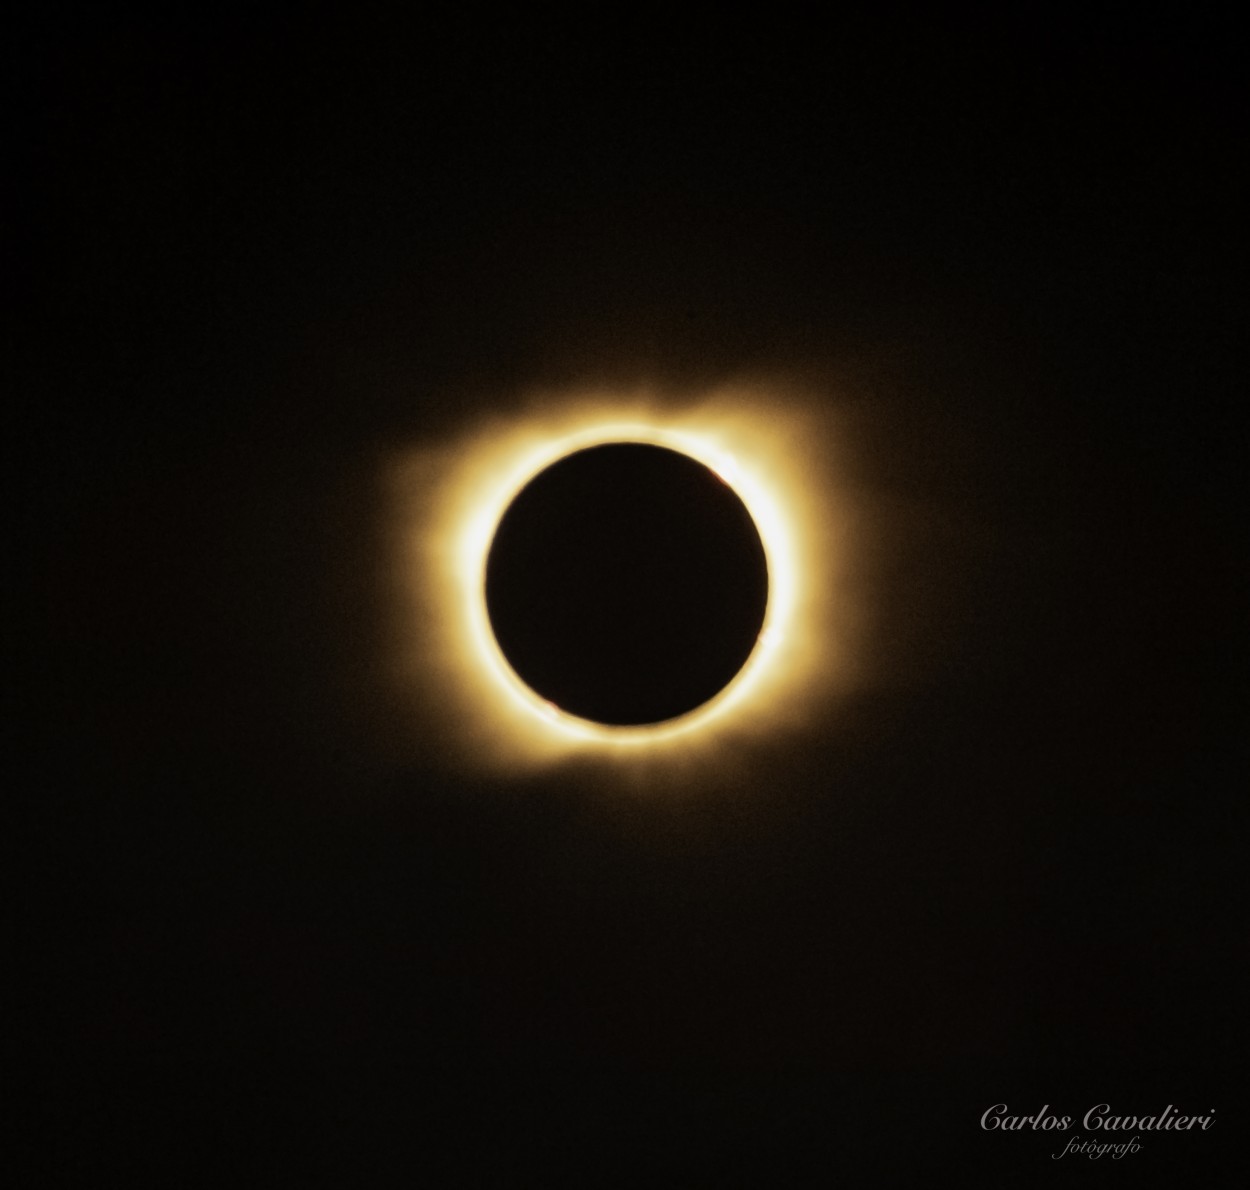 "Eclipse total de sol. Valcheta Pcia de Rio Negro." de Carlos Cavalieri